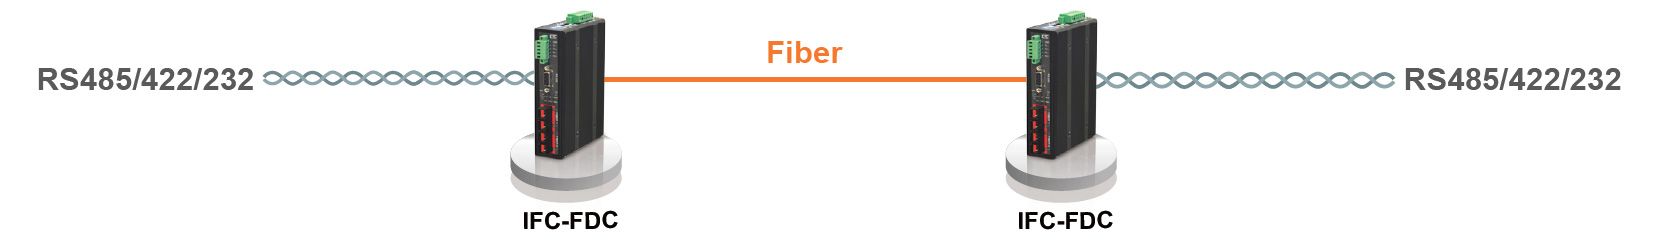 Topología y aplicación punto a punto de fibra IFC-FDC